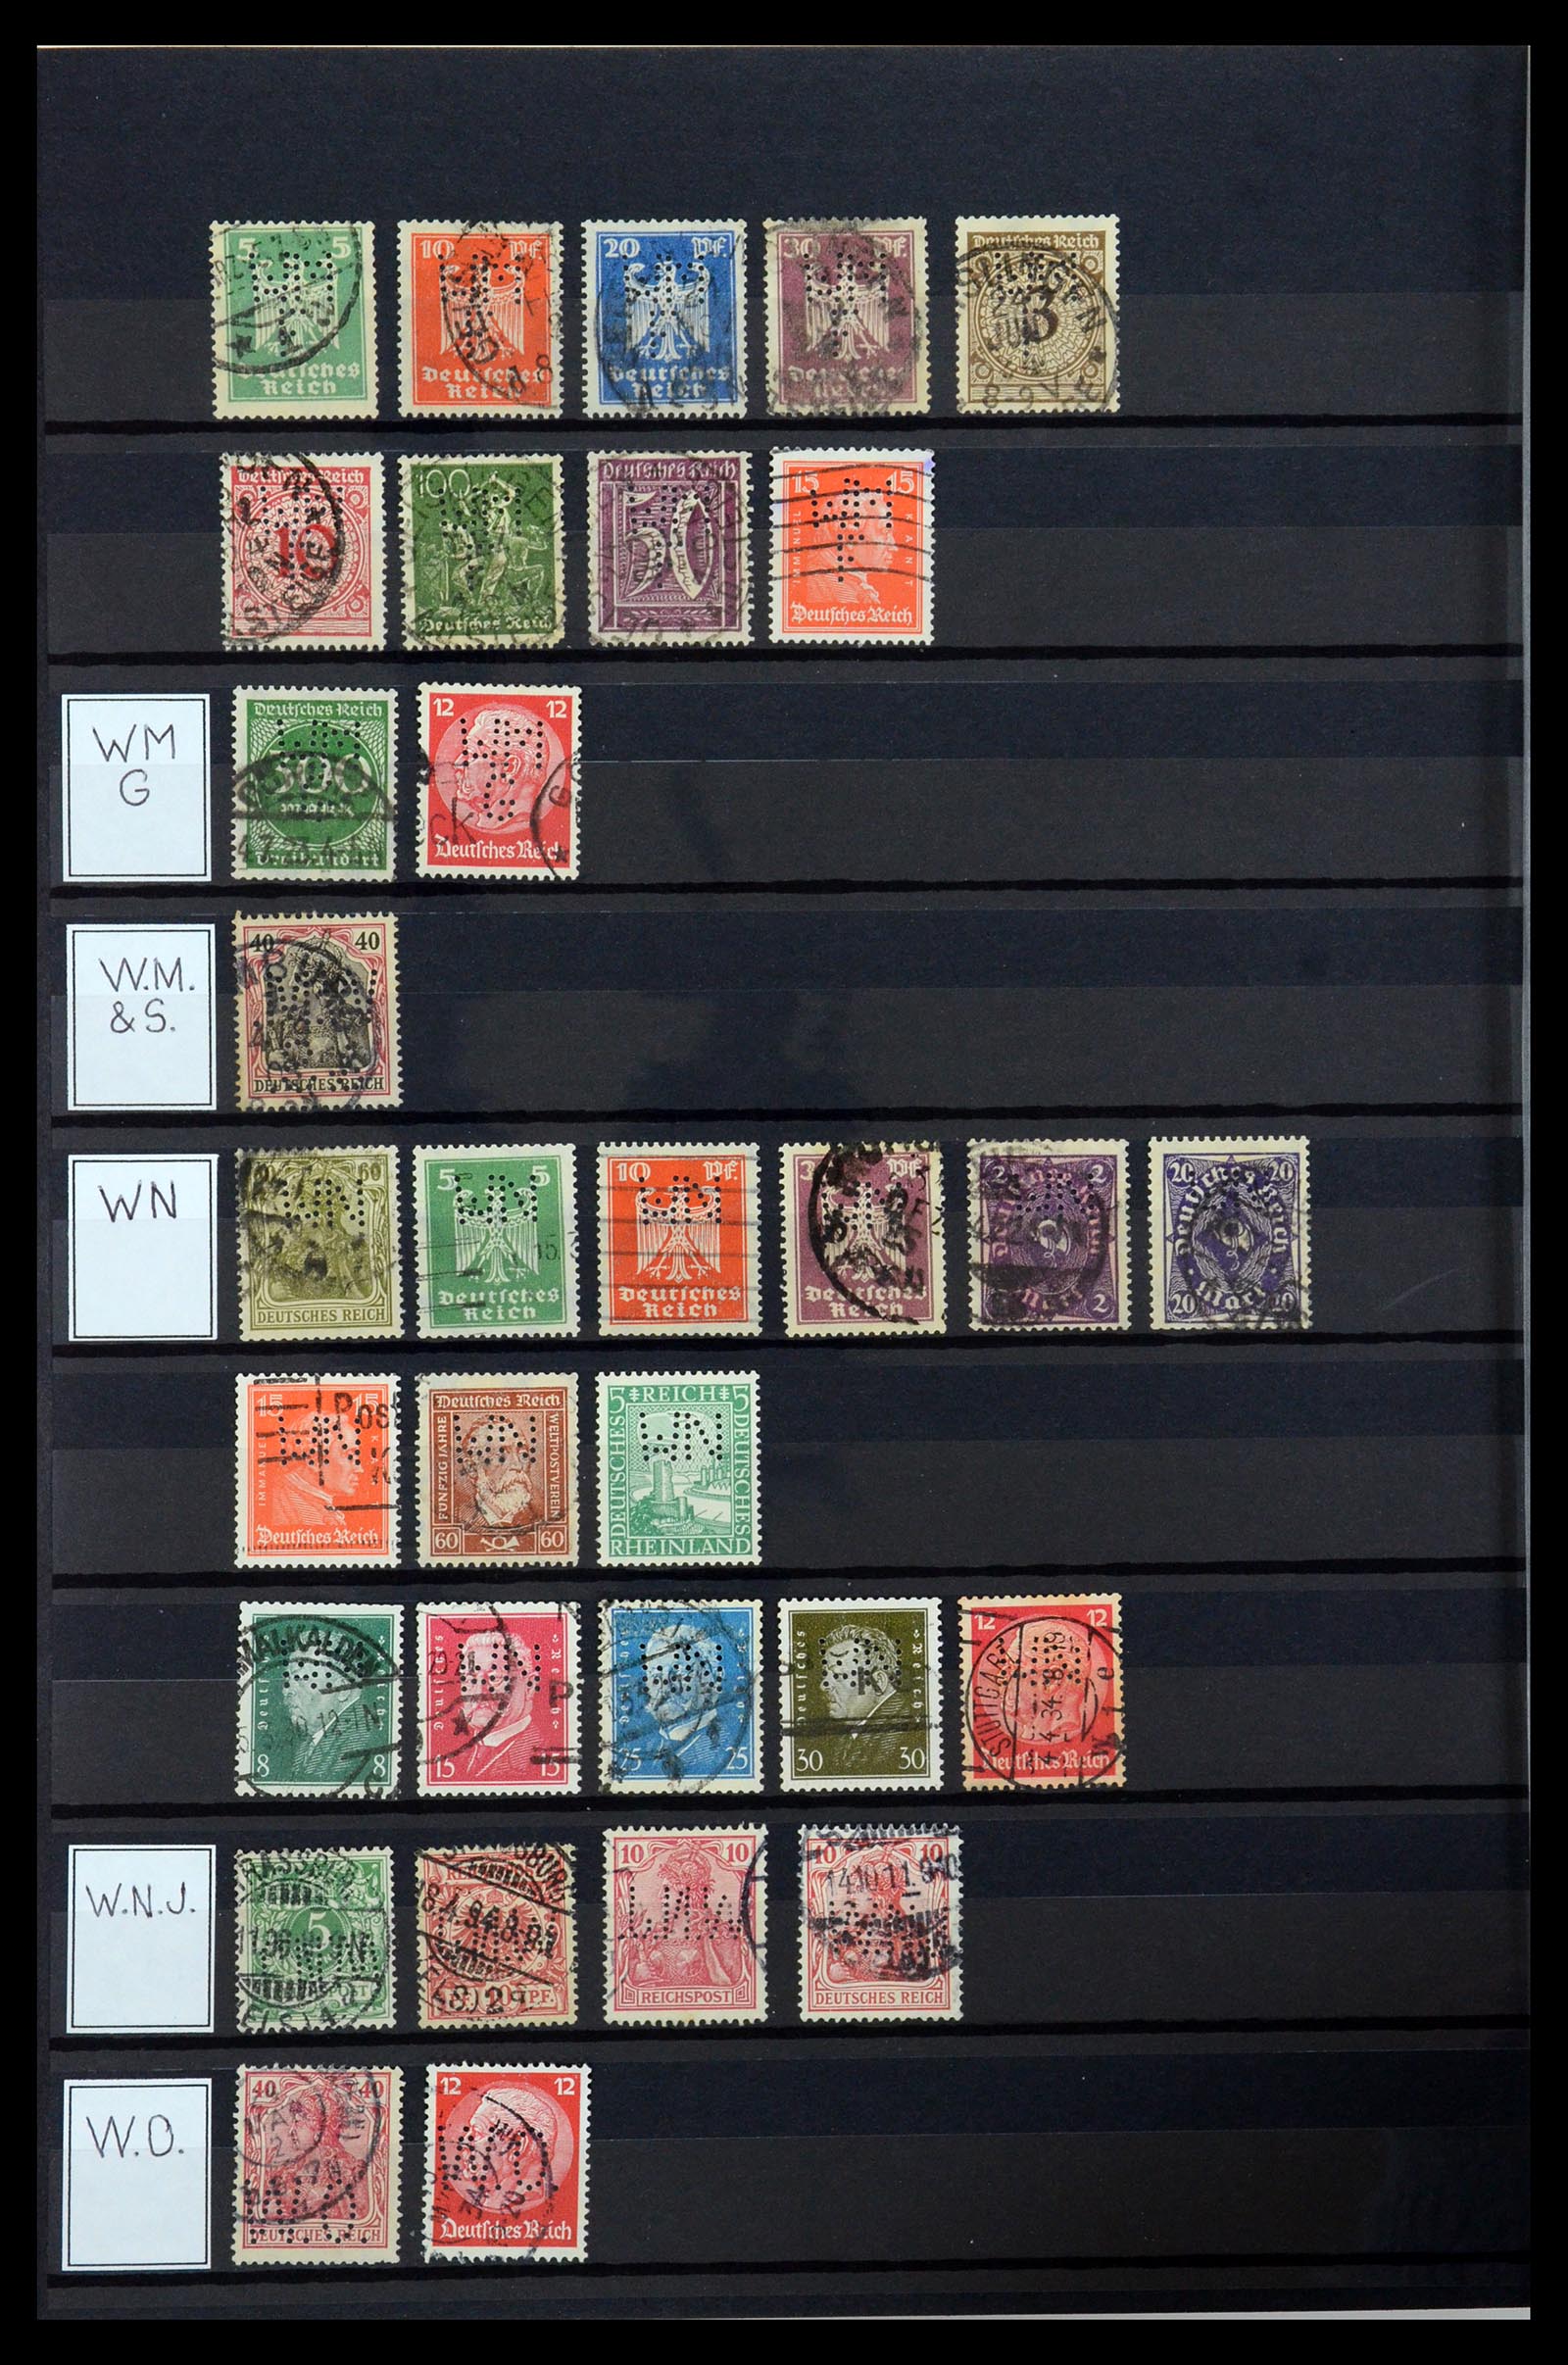 36405 341 - Stamp collection 36405 German Reich perfins 1880-1945.